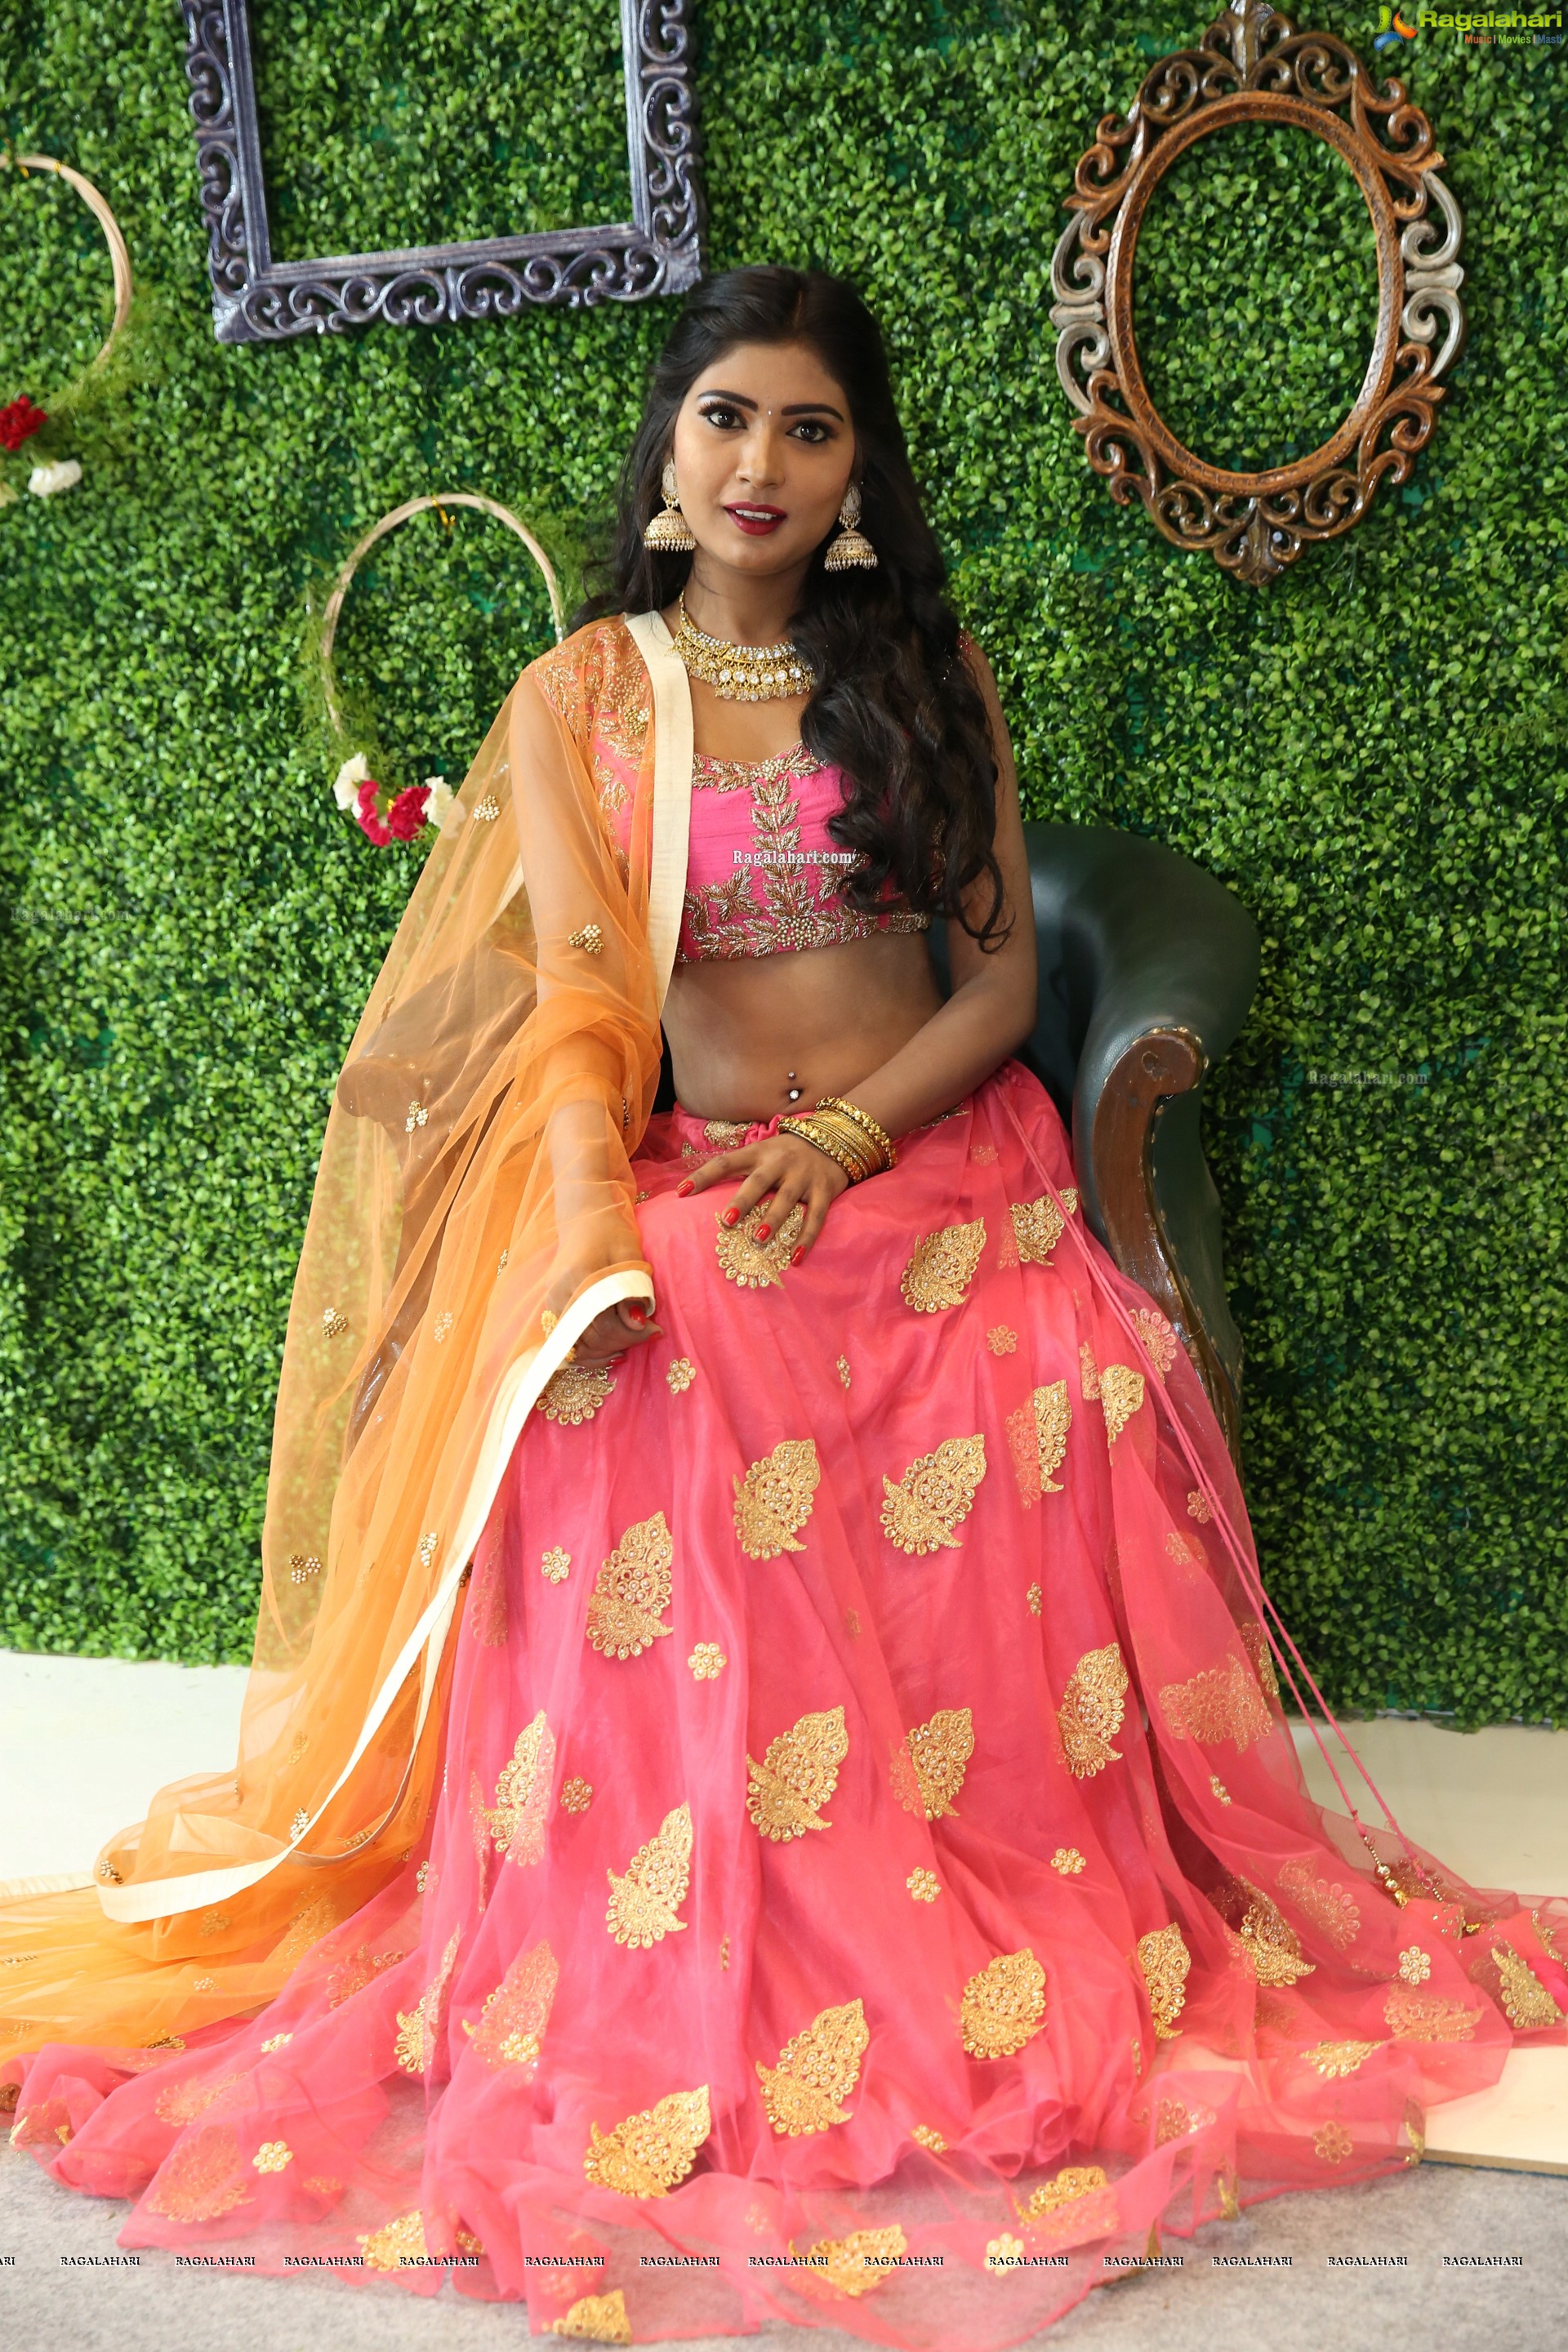 Sanjana Choudhary at Indiajoy 2019 Event